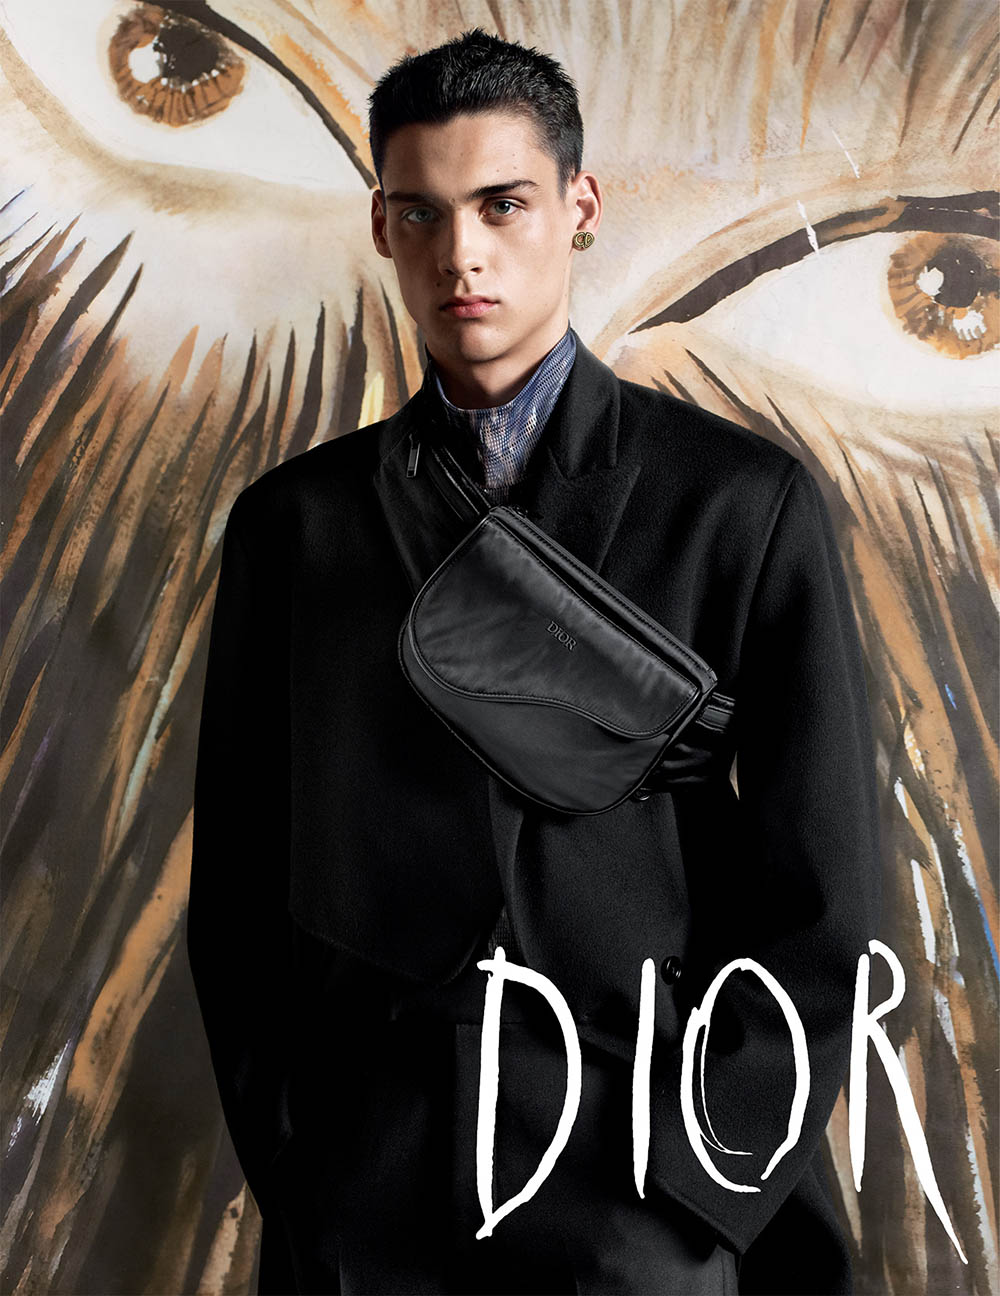 Dior Men Fall Winter 2019 Campaign